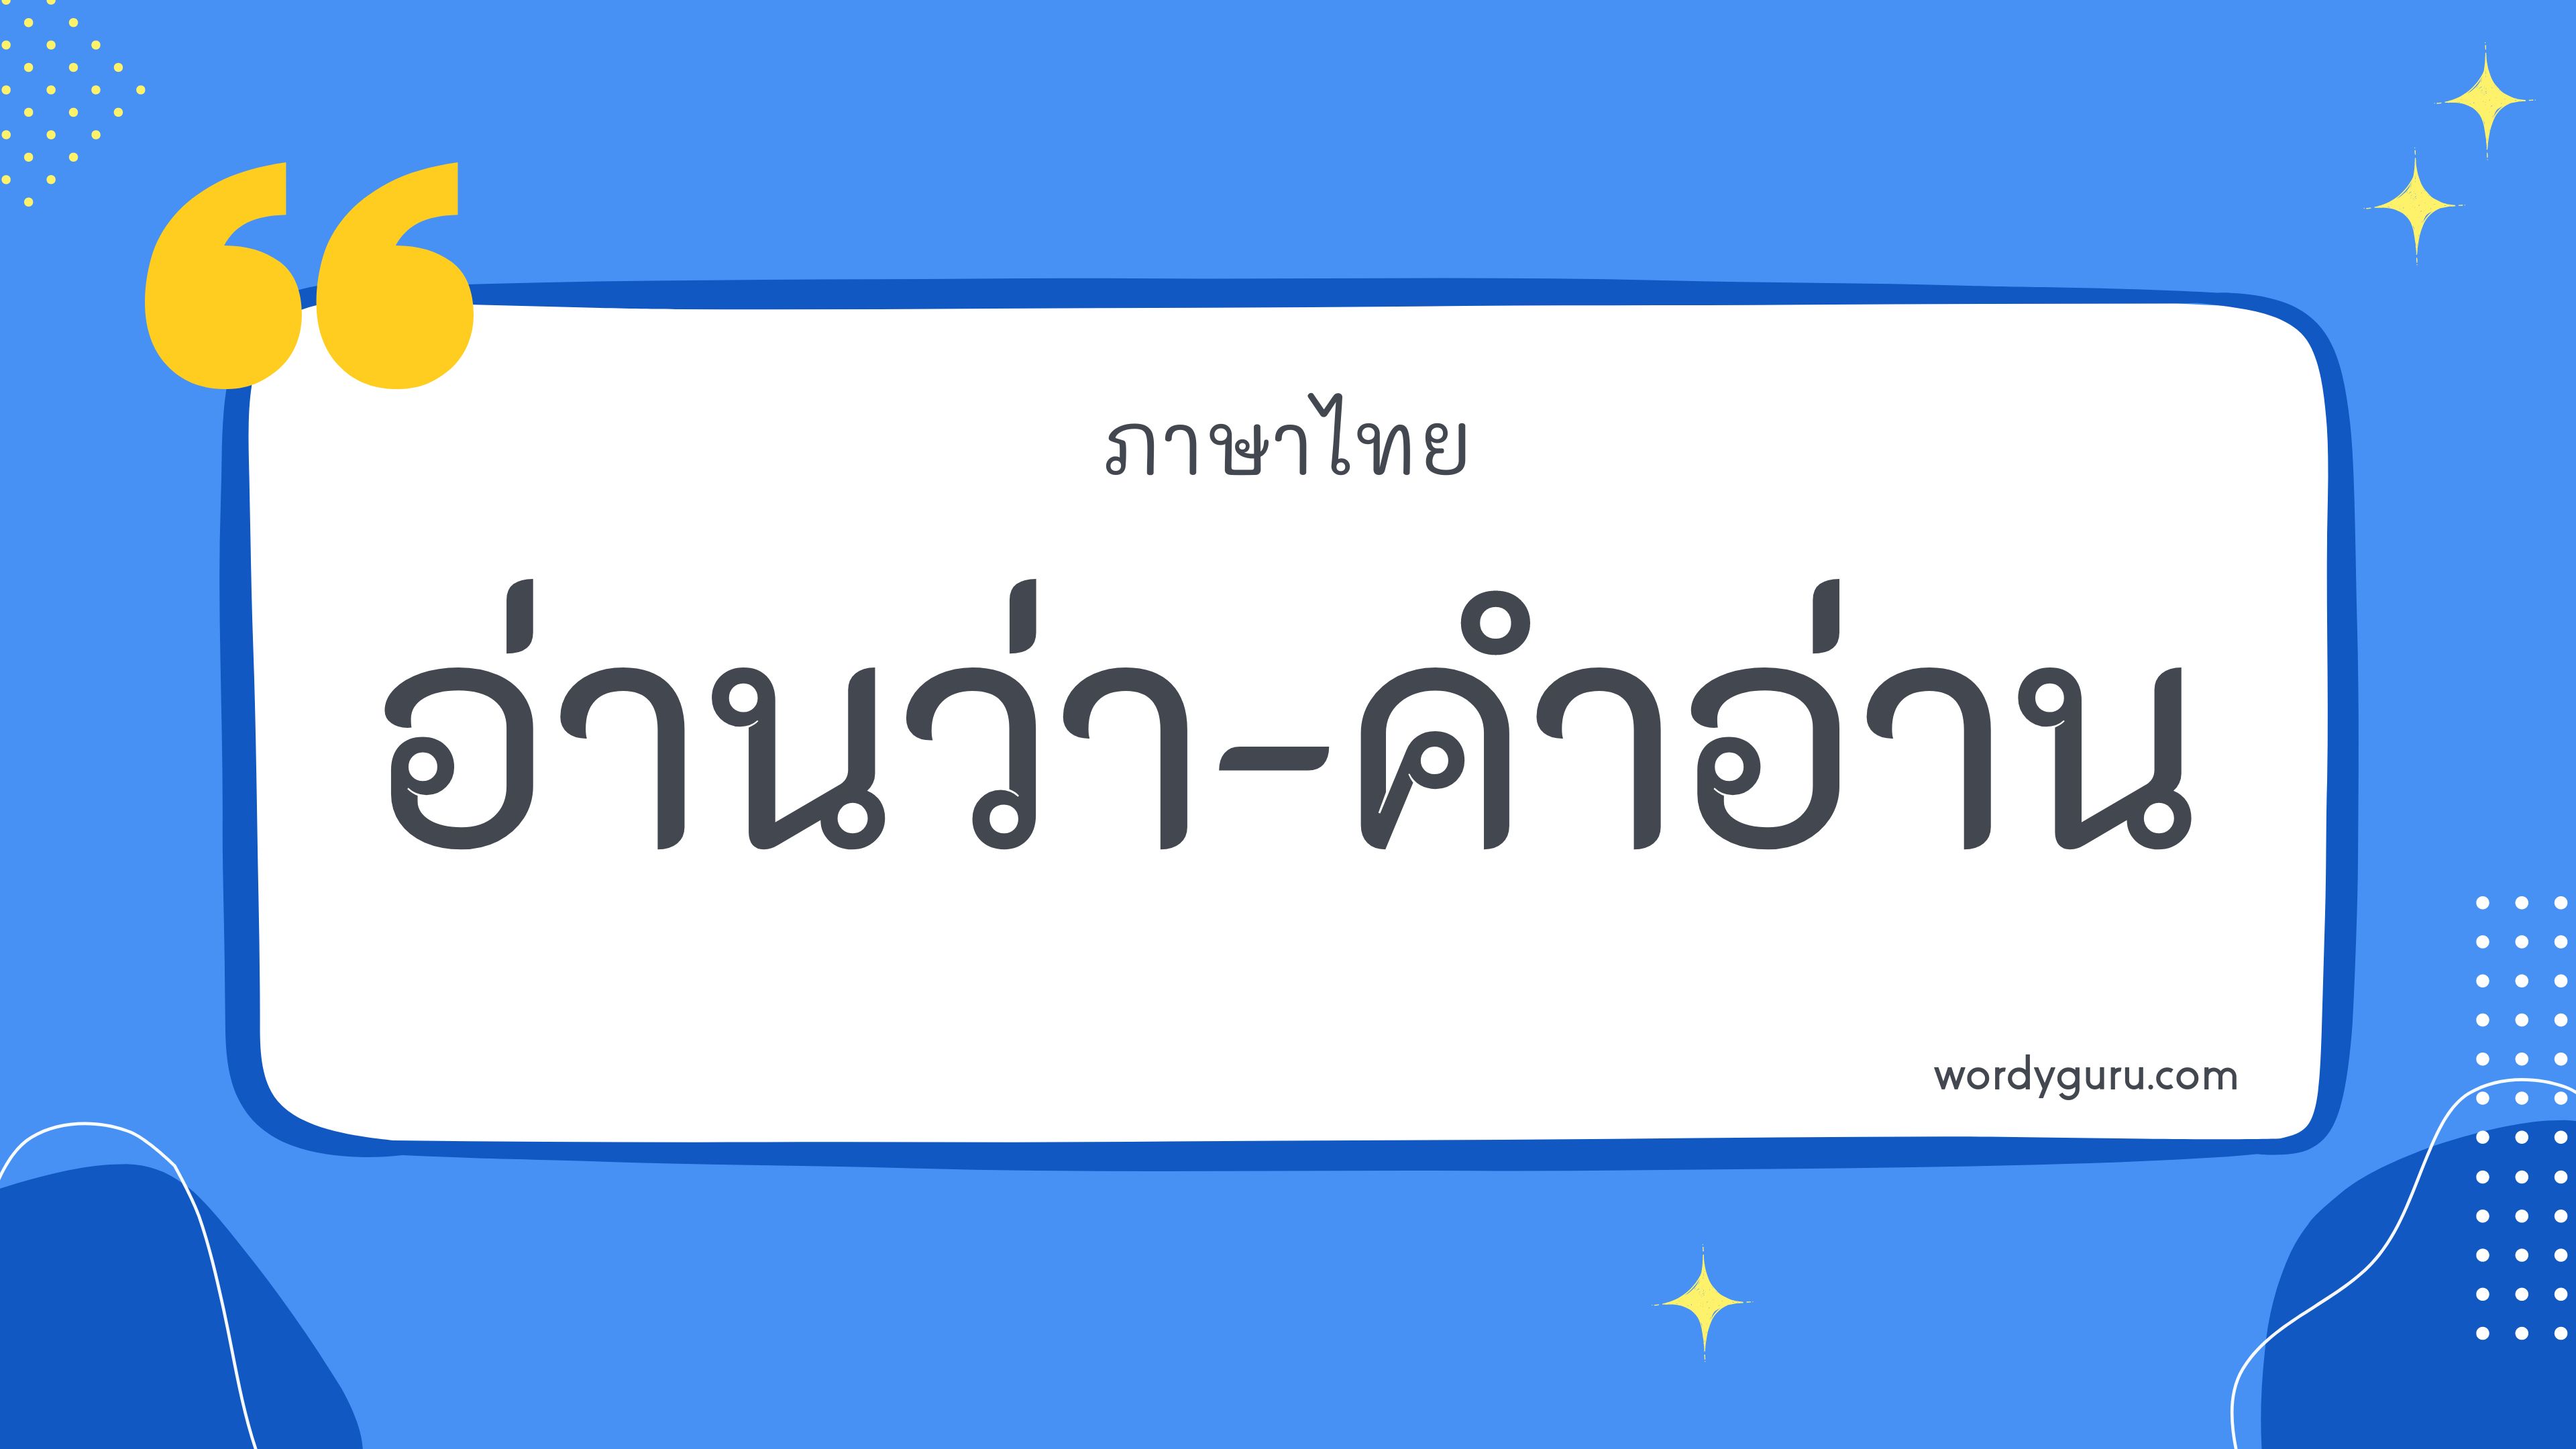 คำในภาษาไทย 100 คำ ที่นิยมใช้ พบเห็นบ่อย ในชีวิตประจำวัน